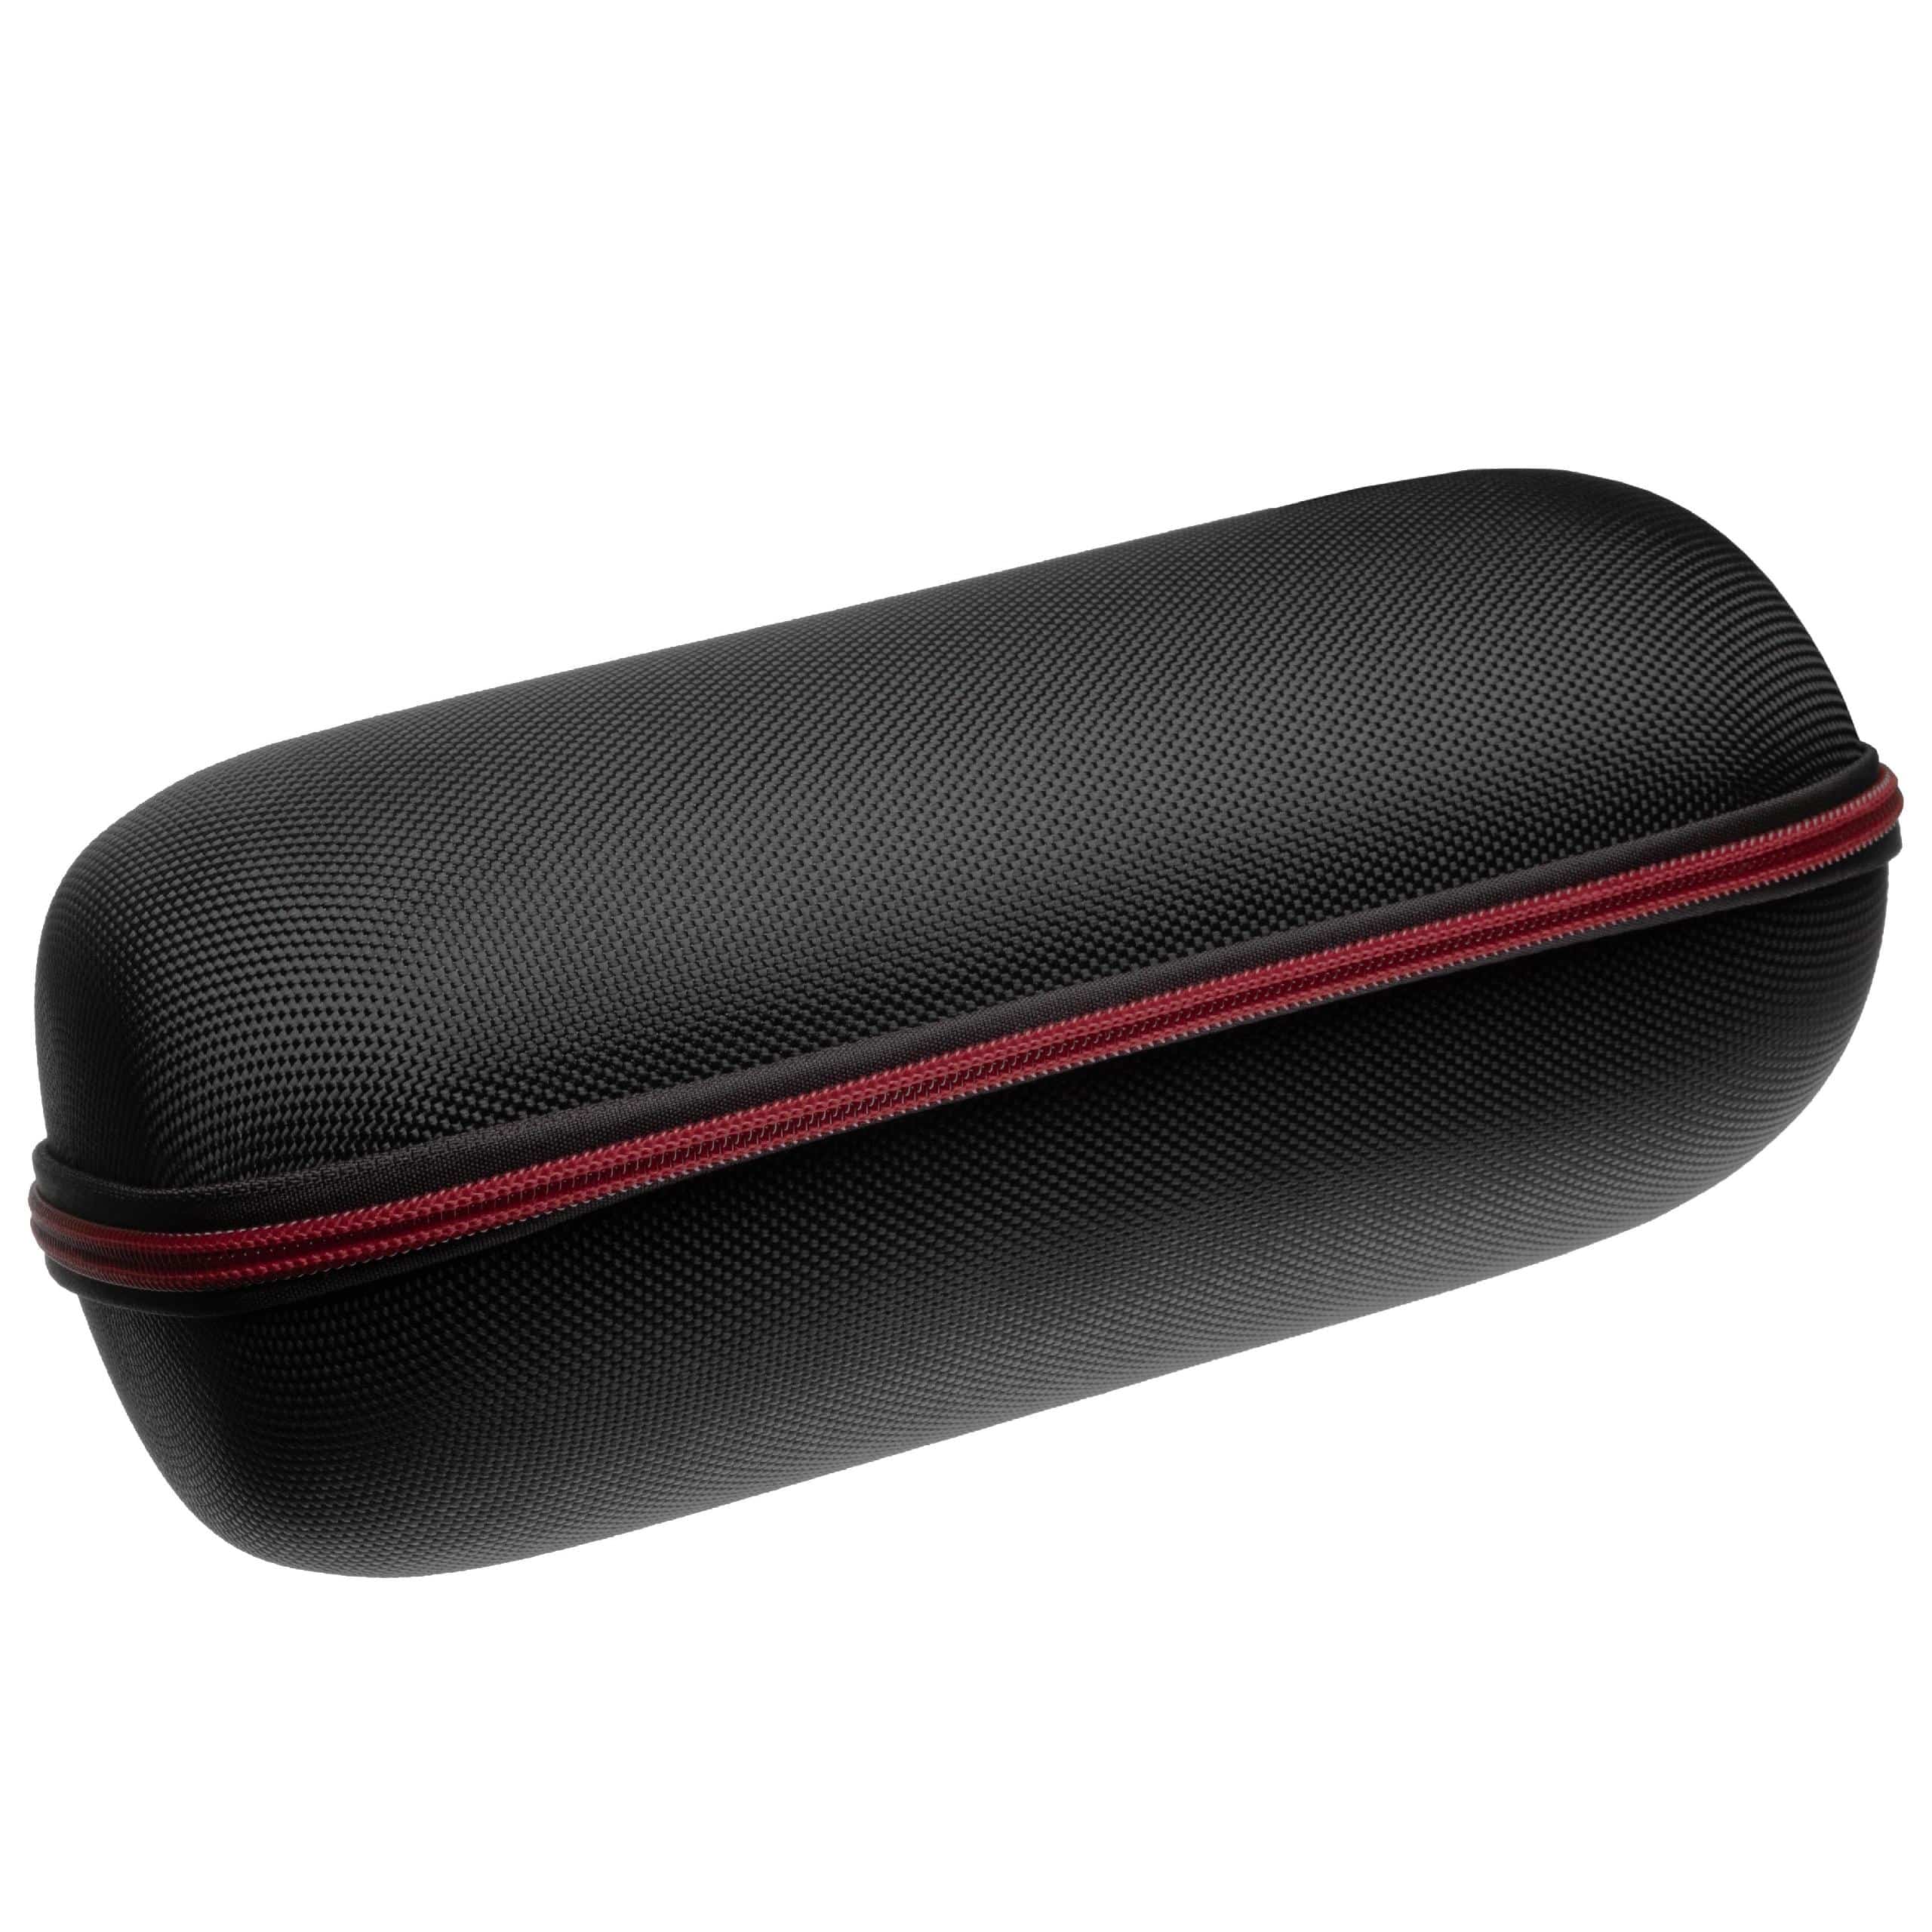 Tasche passend für JBL Charge 4 Lautsprecher - Nylon, Schwarz, Rot, Mit Tragegurt